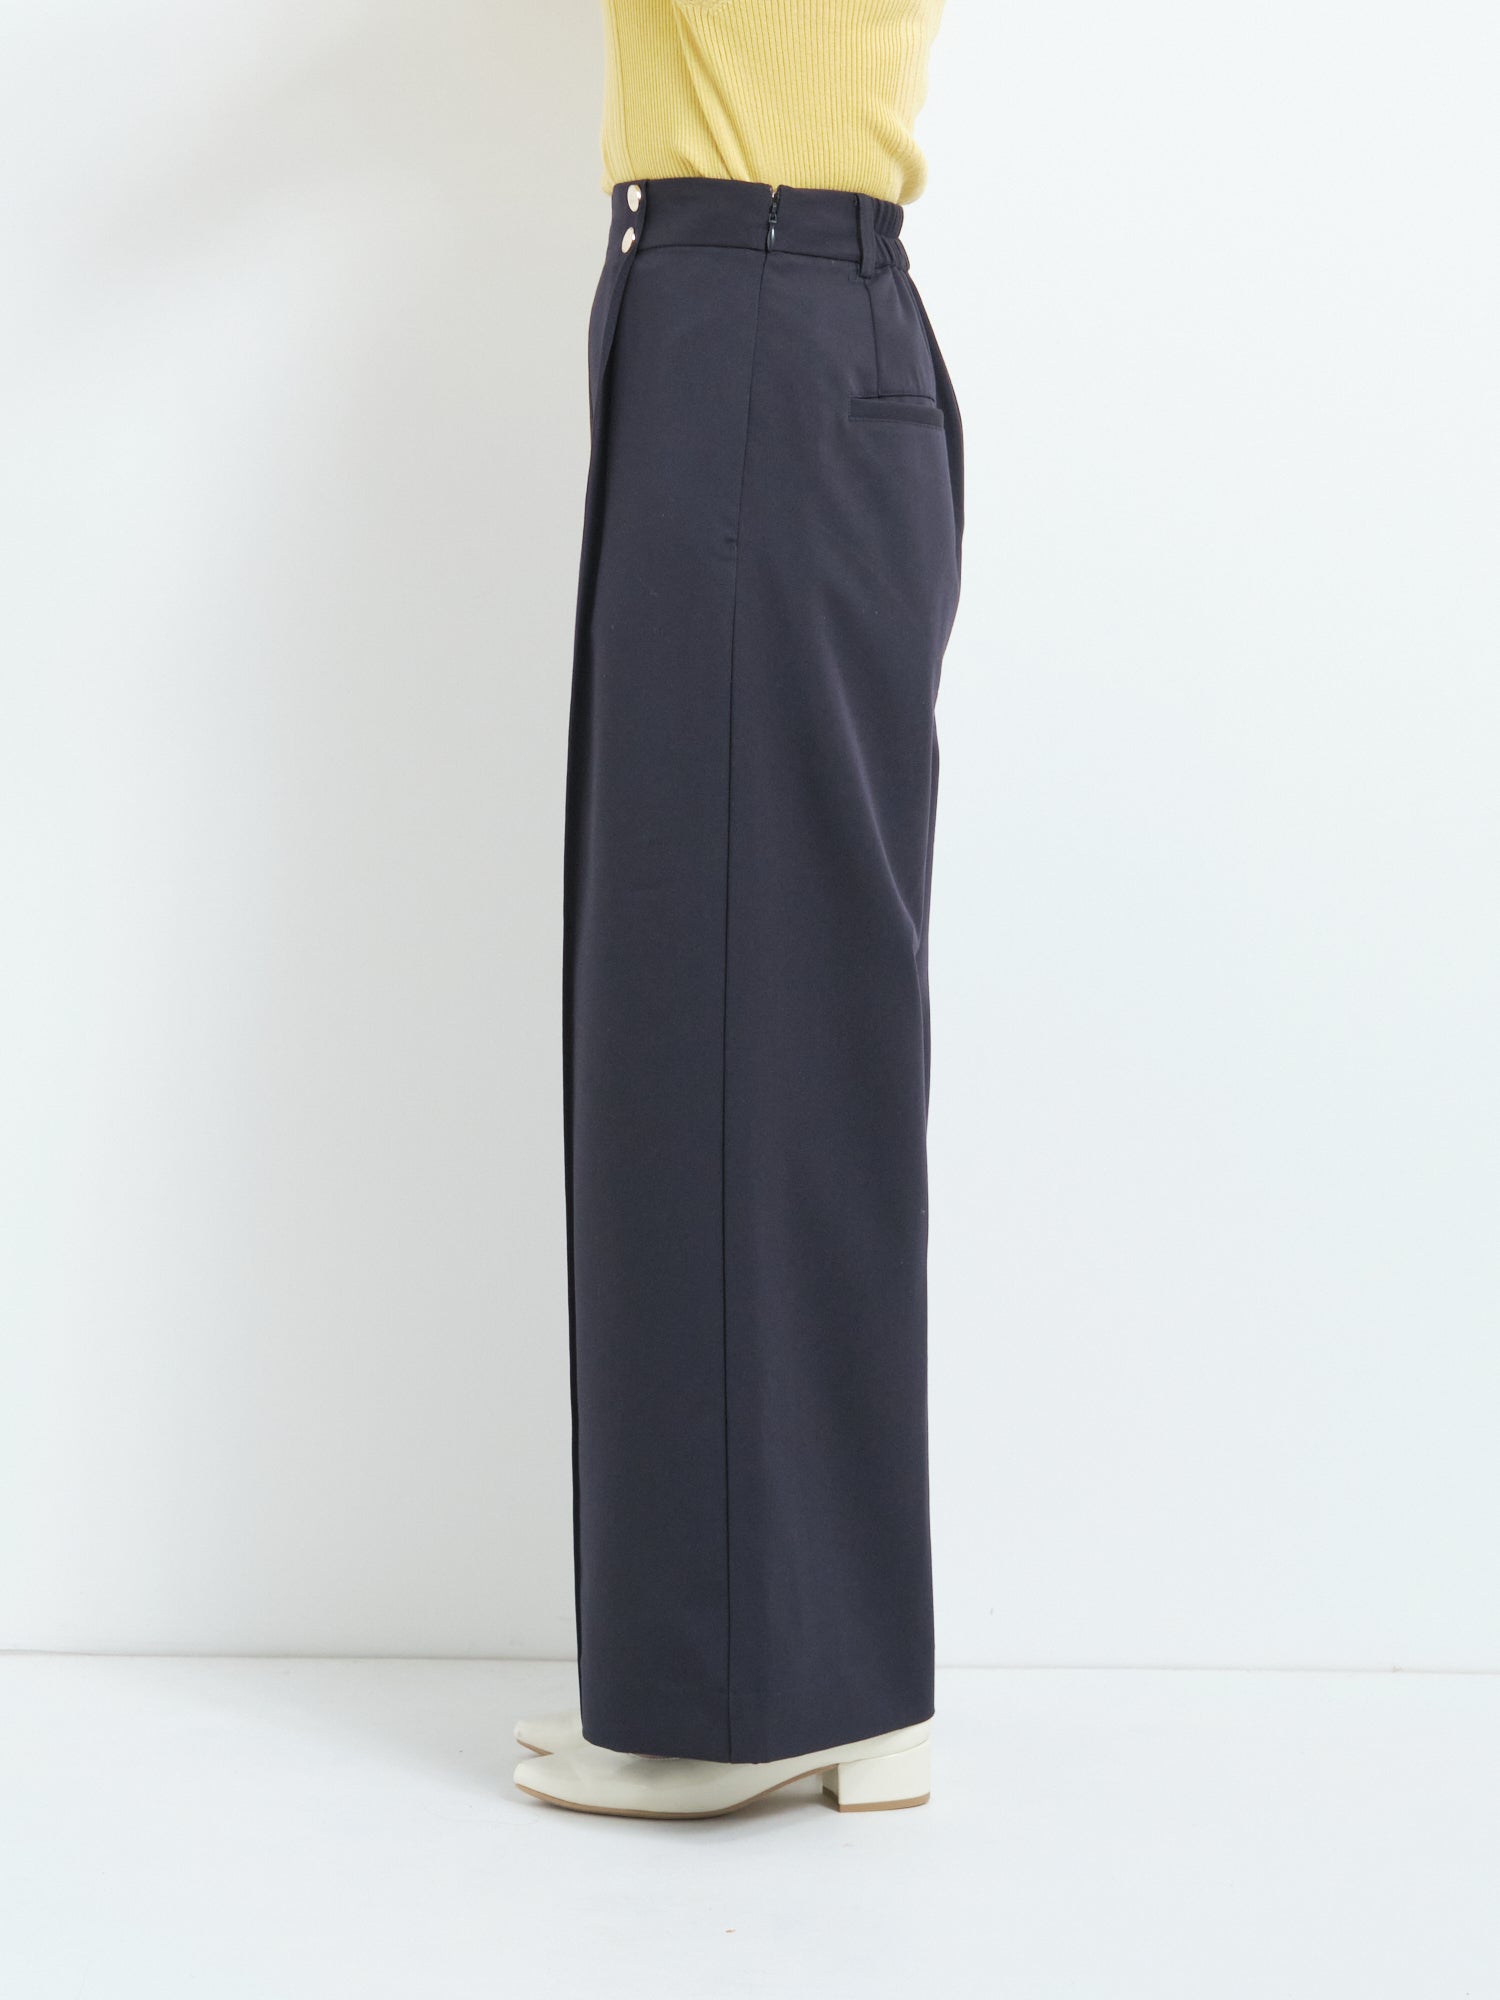 センターコバマリンパンツ | 小柄・低身長女性向けファッション通販 